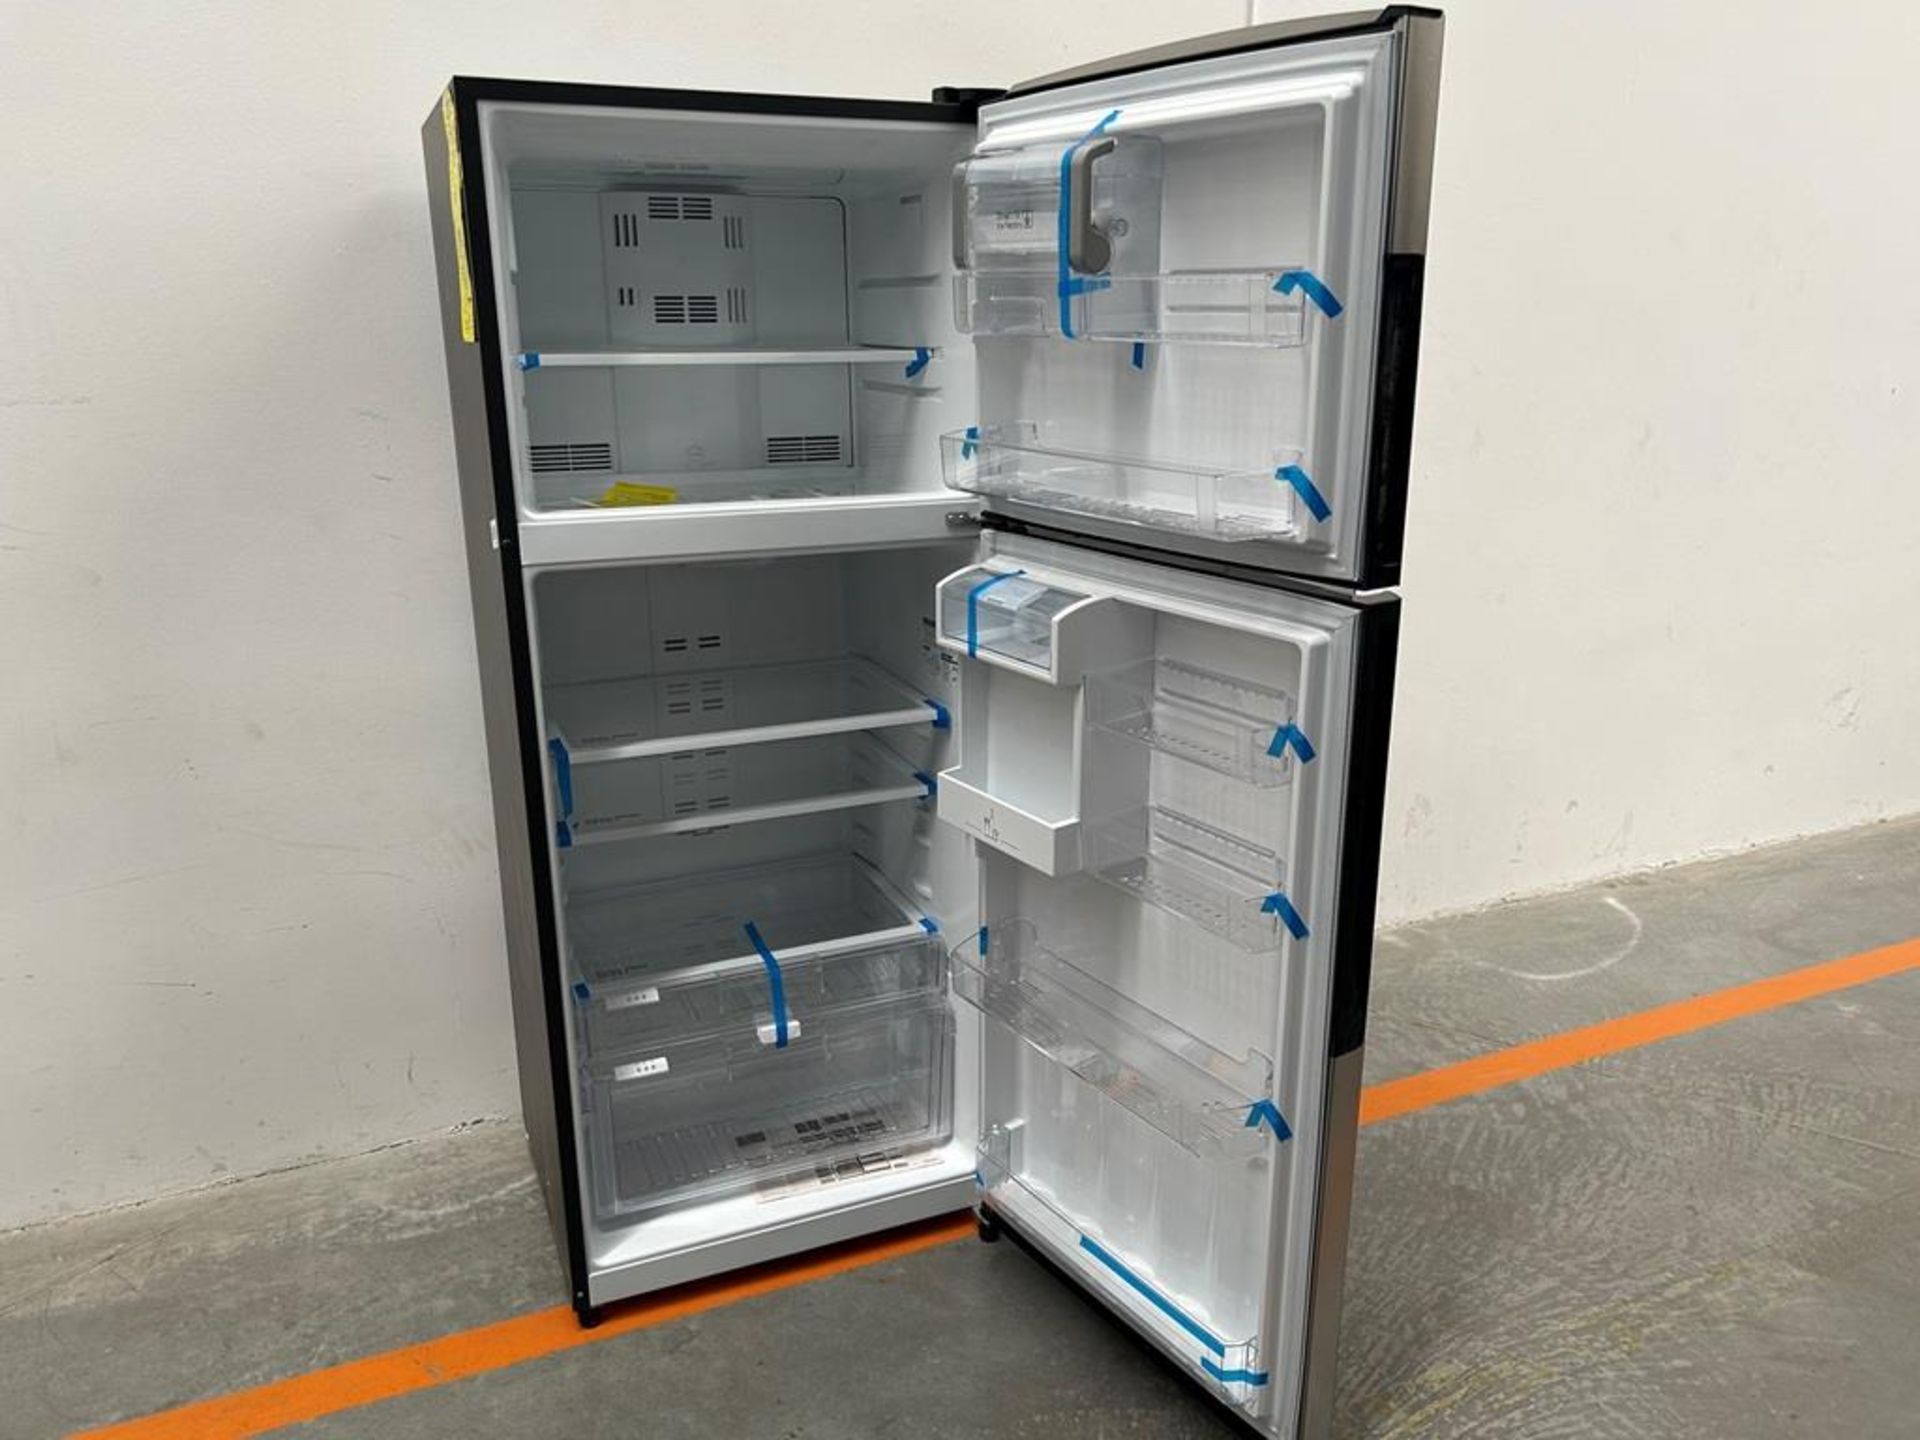 (NUEVO) Refrigerador con dispensador de agua Marca MABE, Modelo RMS510IBMRXA, Serie 04327, Color GR - Image 4 of 11